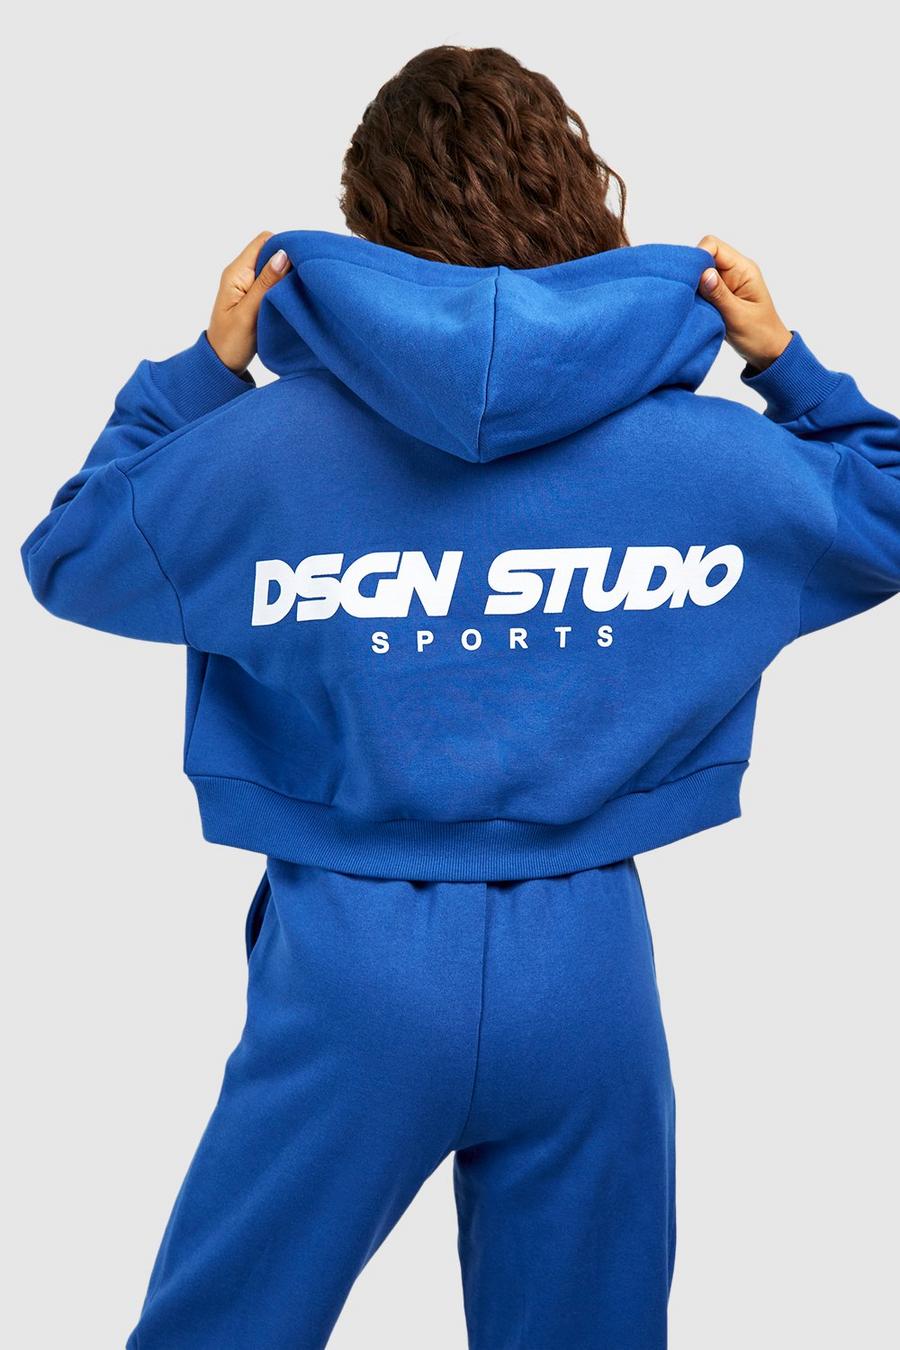 Felpa corta squadrata Dsgn Studio Sports con zip e cappuccio, Cobalt